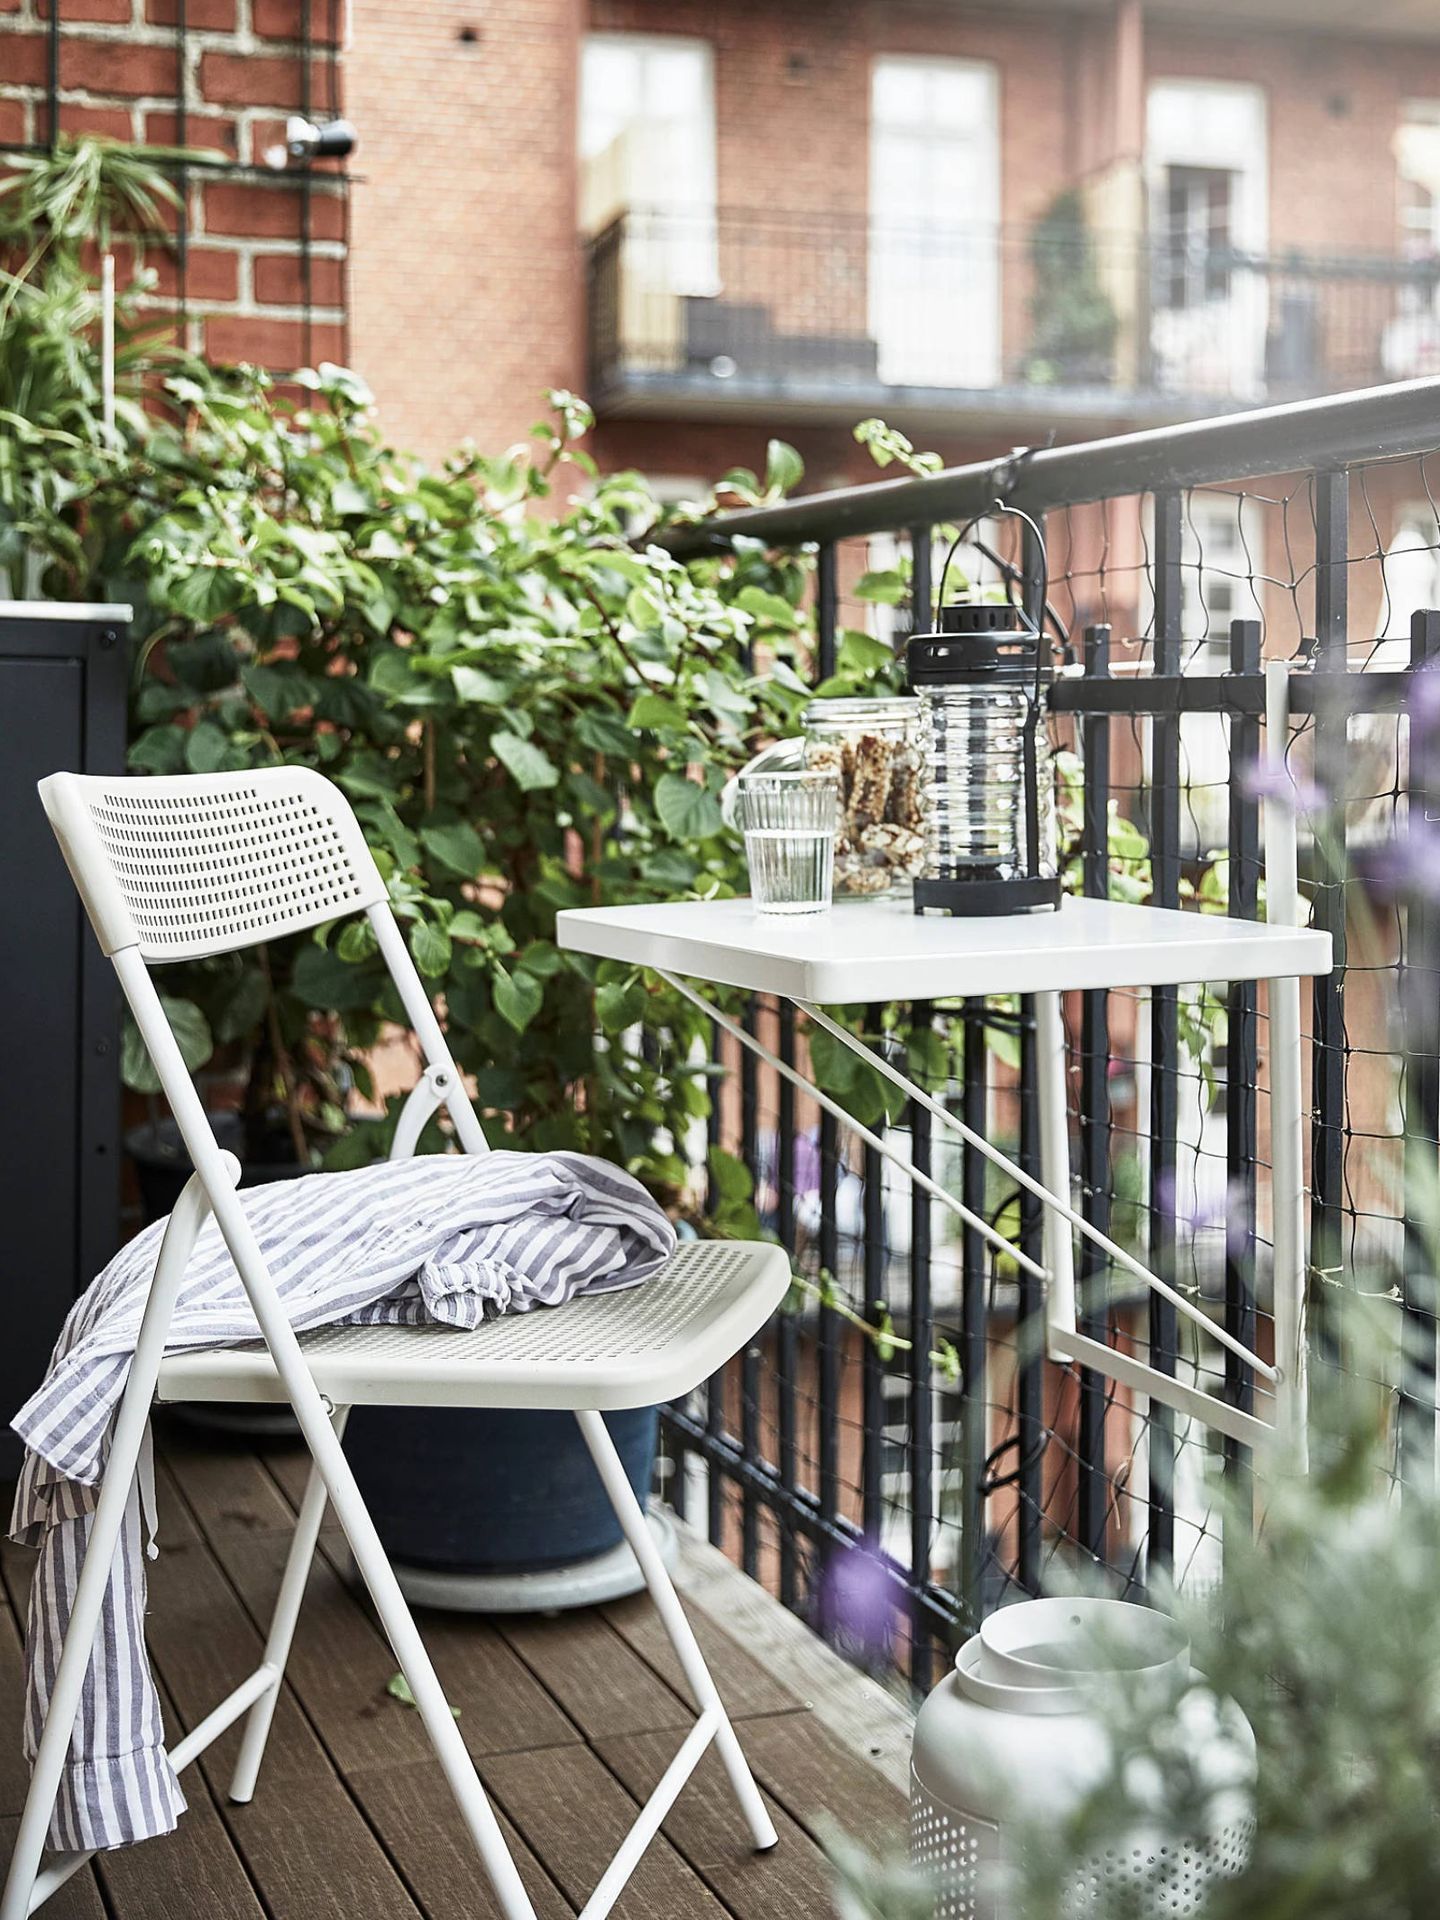 Estas mesas de exterior de Ikea son ideales para balcones pequeños. (Cortesía)